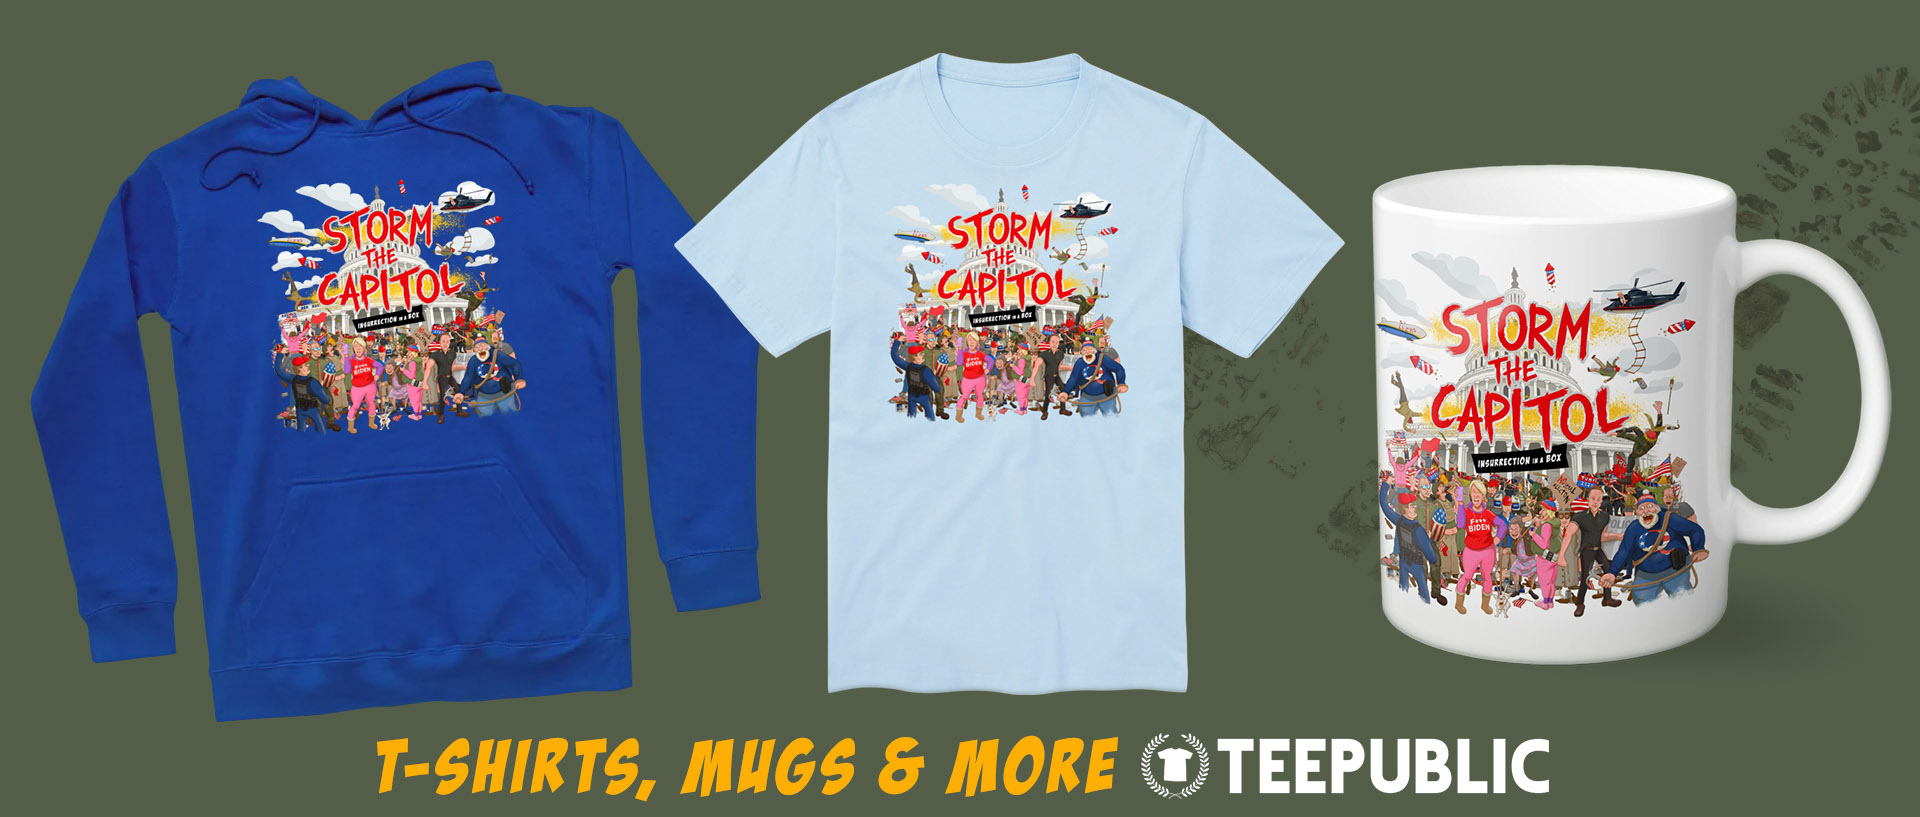 T-shirts, mugs and more at Teepublic